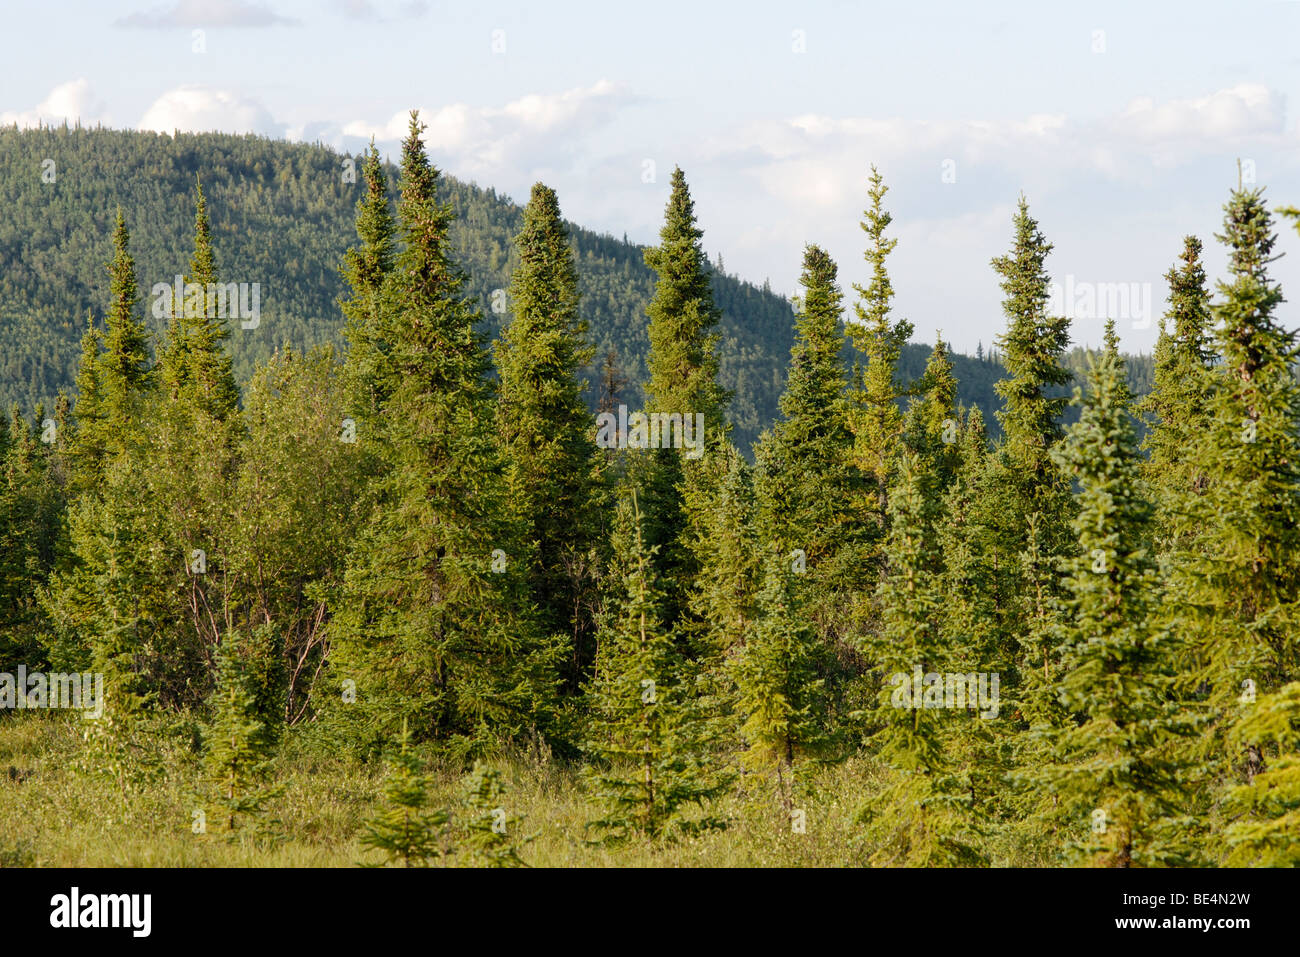 Black spruce, Picea mariana, bosque. El bosque boreal, la taiga. Foto de stock